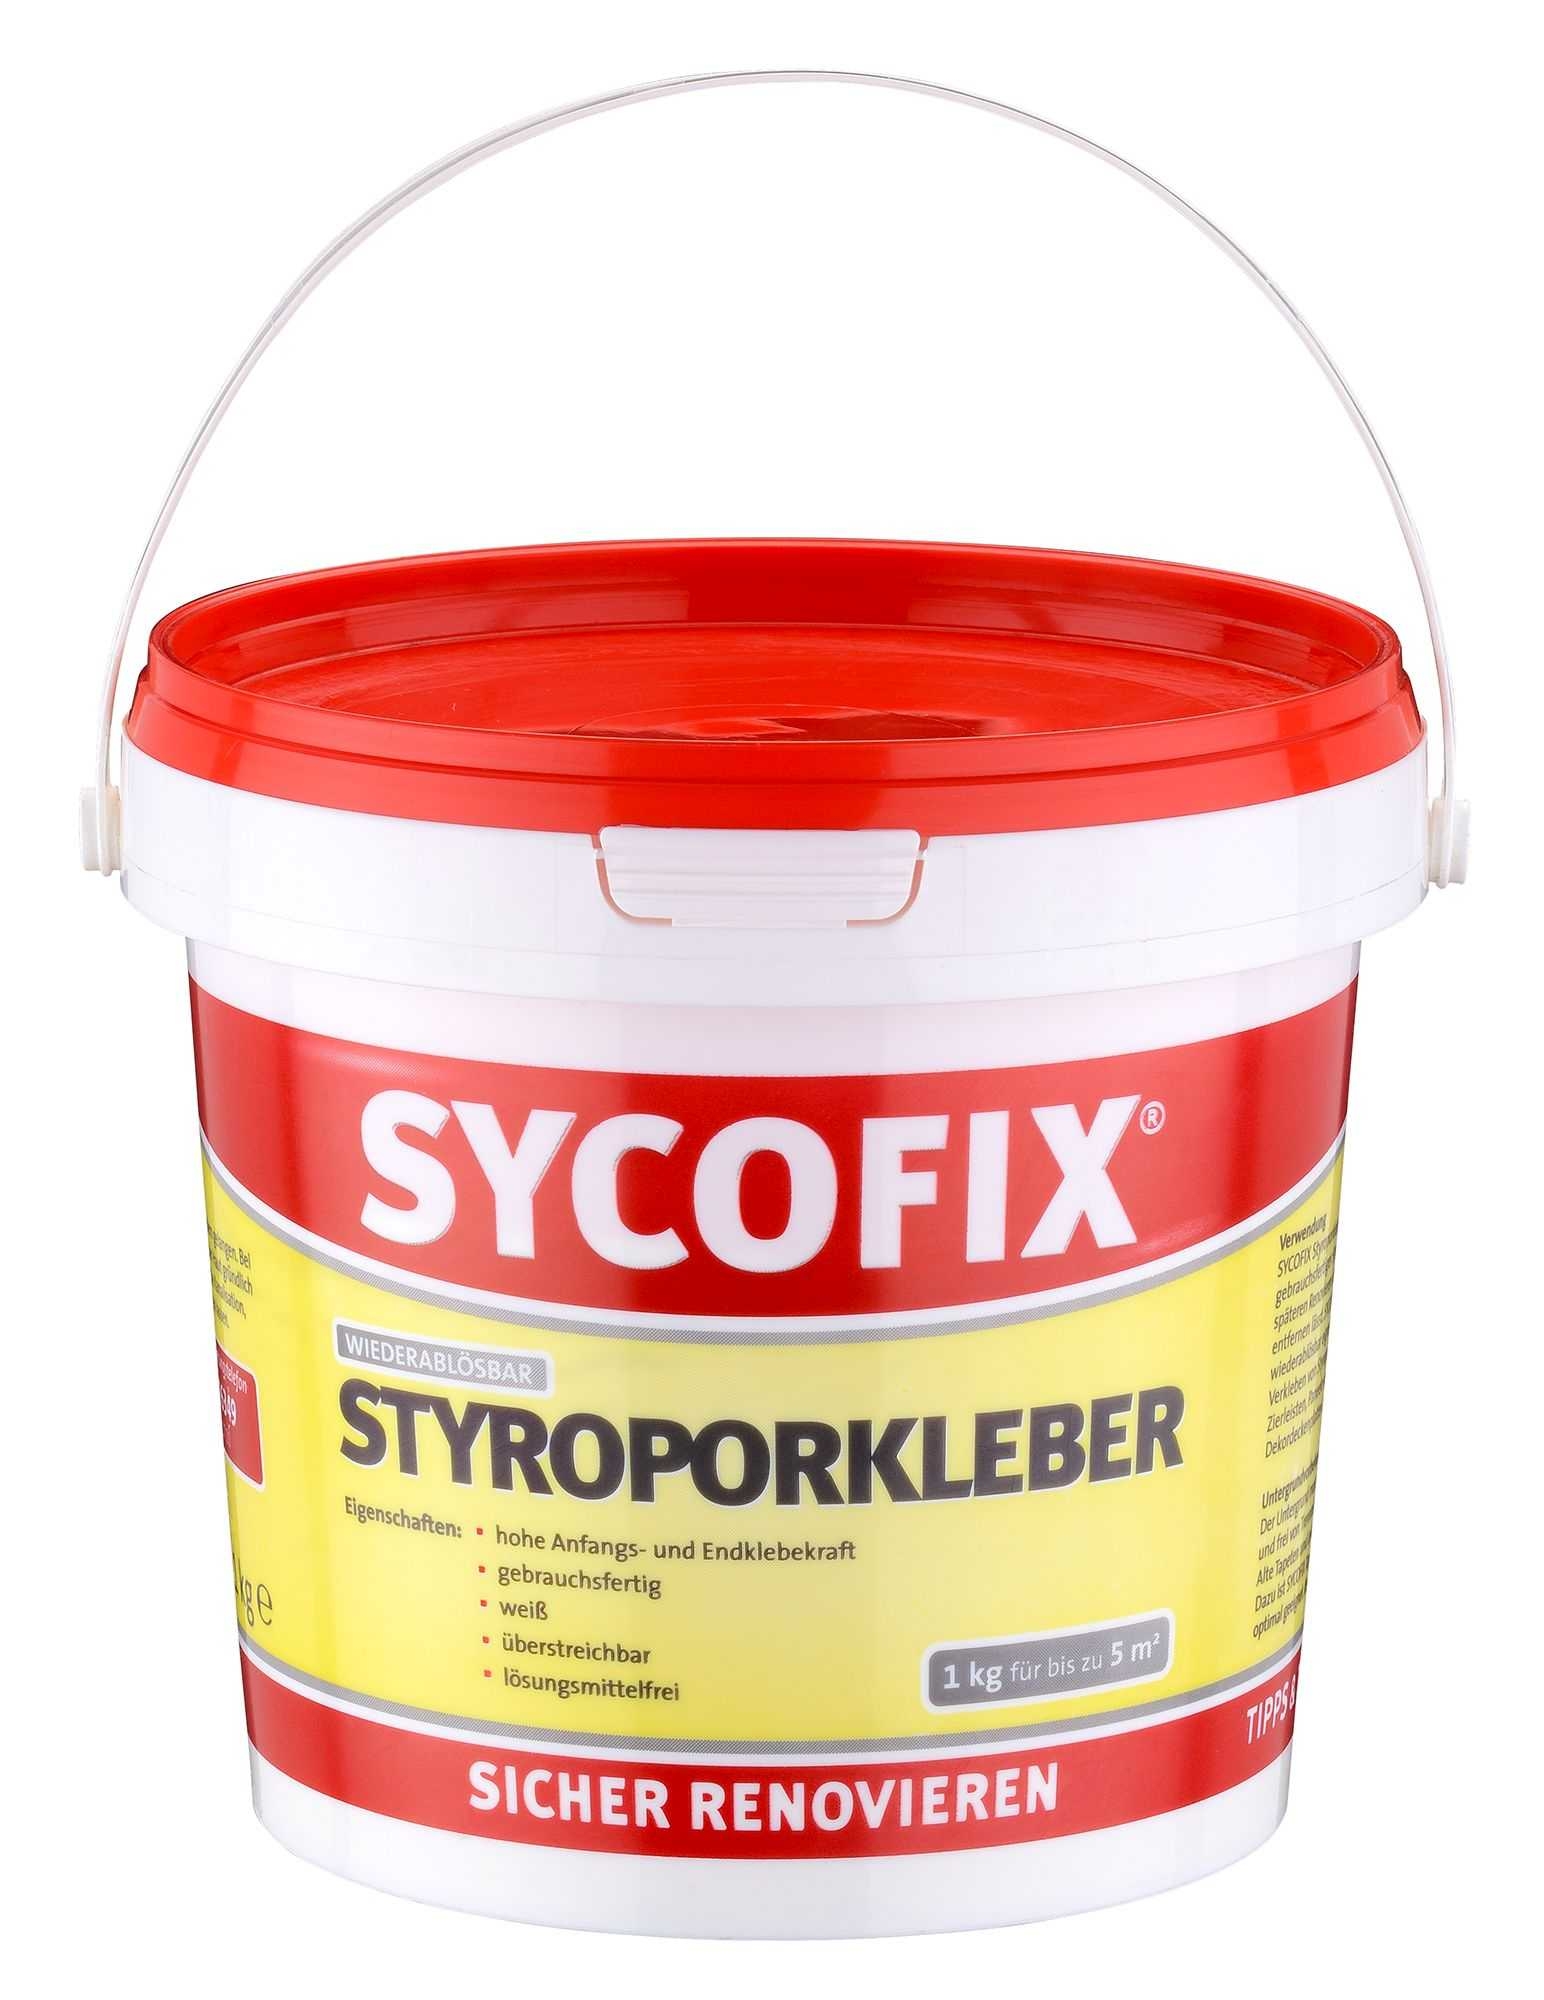 SIEDER GMBH Sycofix® Styroporkleber 1kg wiederablösbar